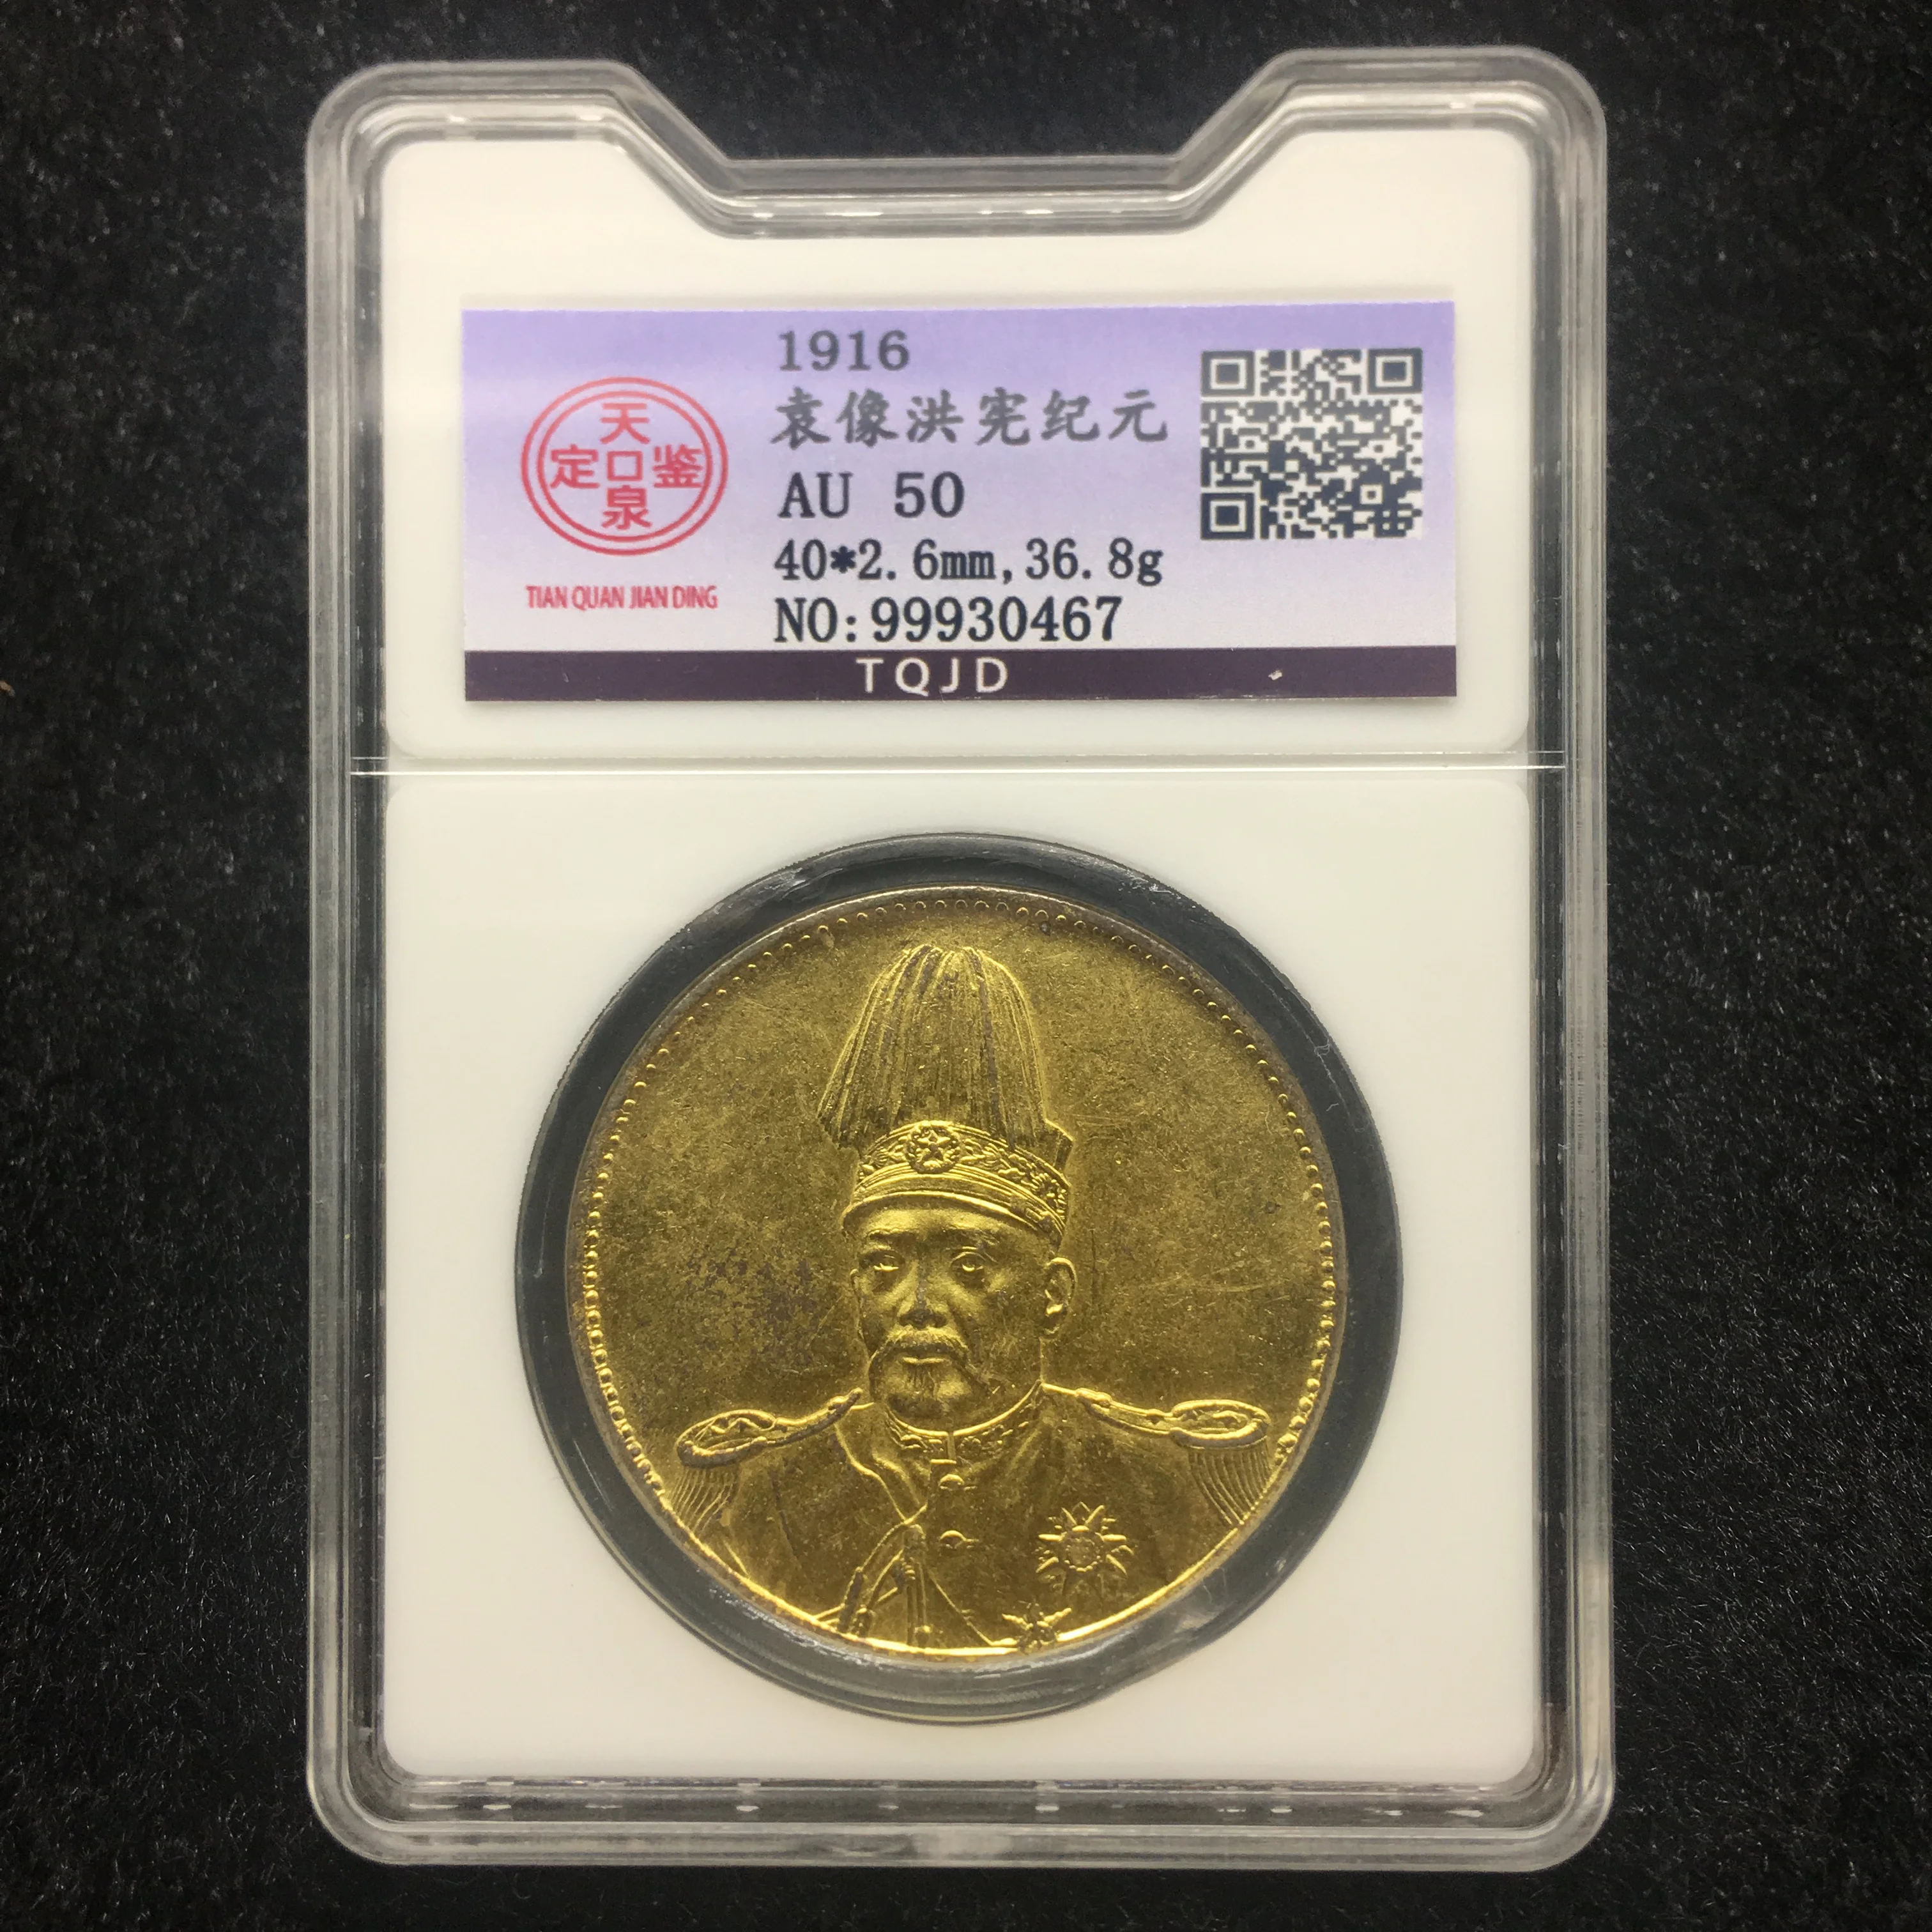 1916 dragón chino 999 monedas de oro y plata originales con clasificación de monedas selladas en caja, moneda de alto grado AU50